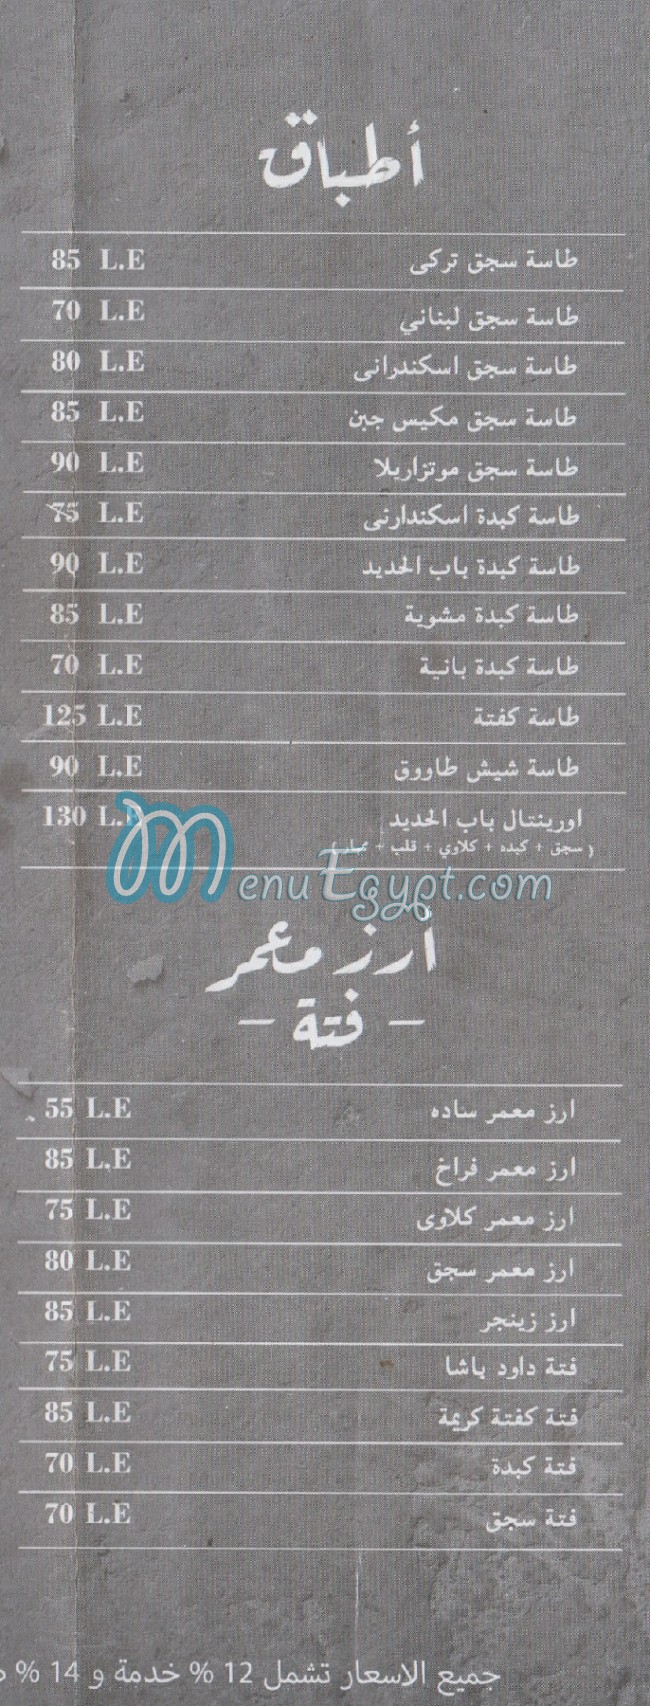 Bab El Hadid menu prices